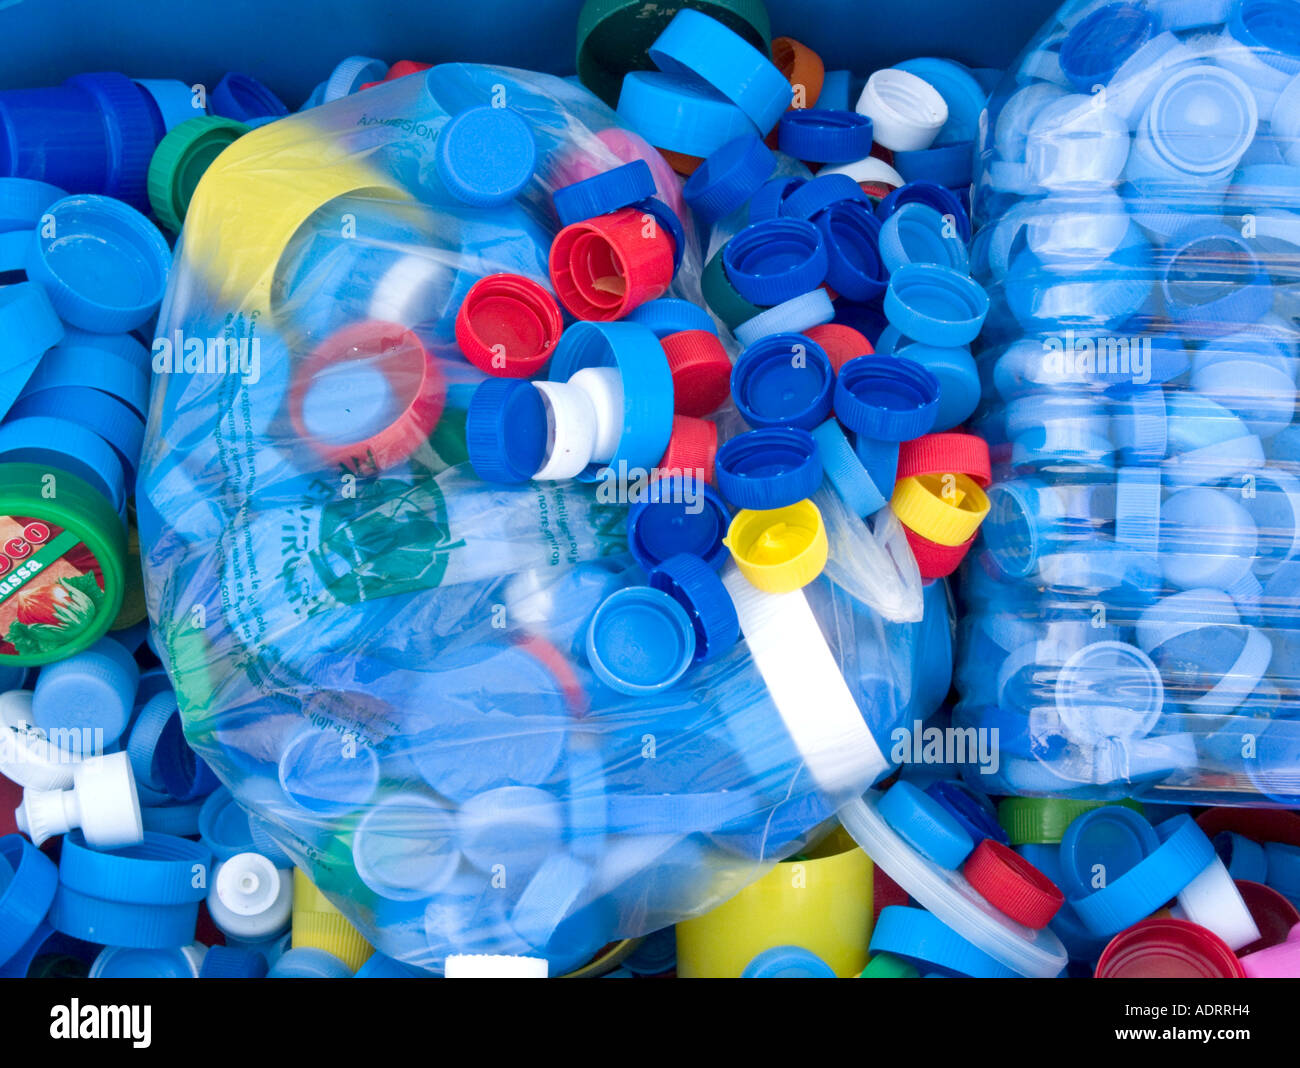 Sacs en plastique plein de bouteilles multicolores se trouvent entre autres tops Banque D'Images